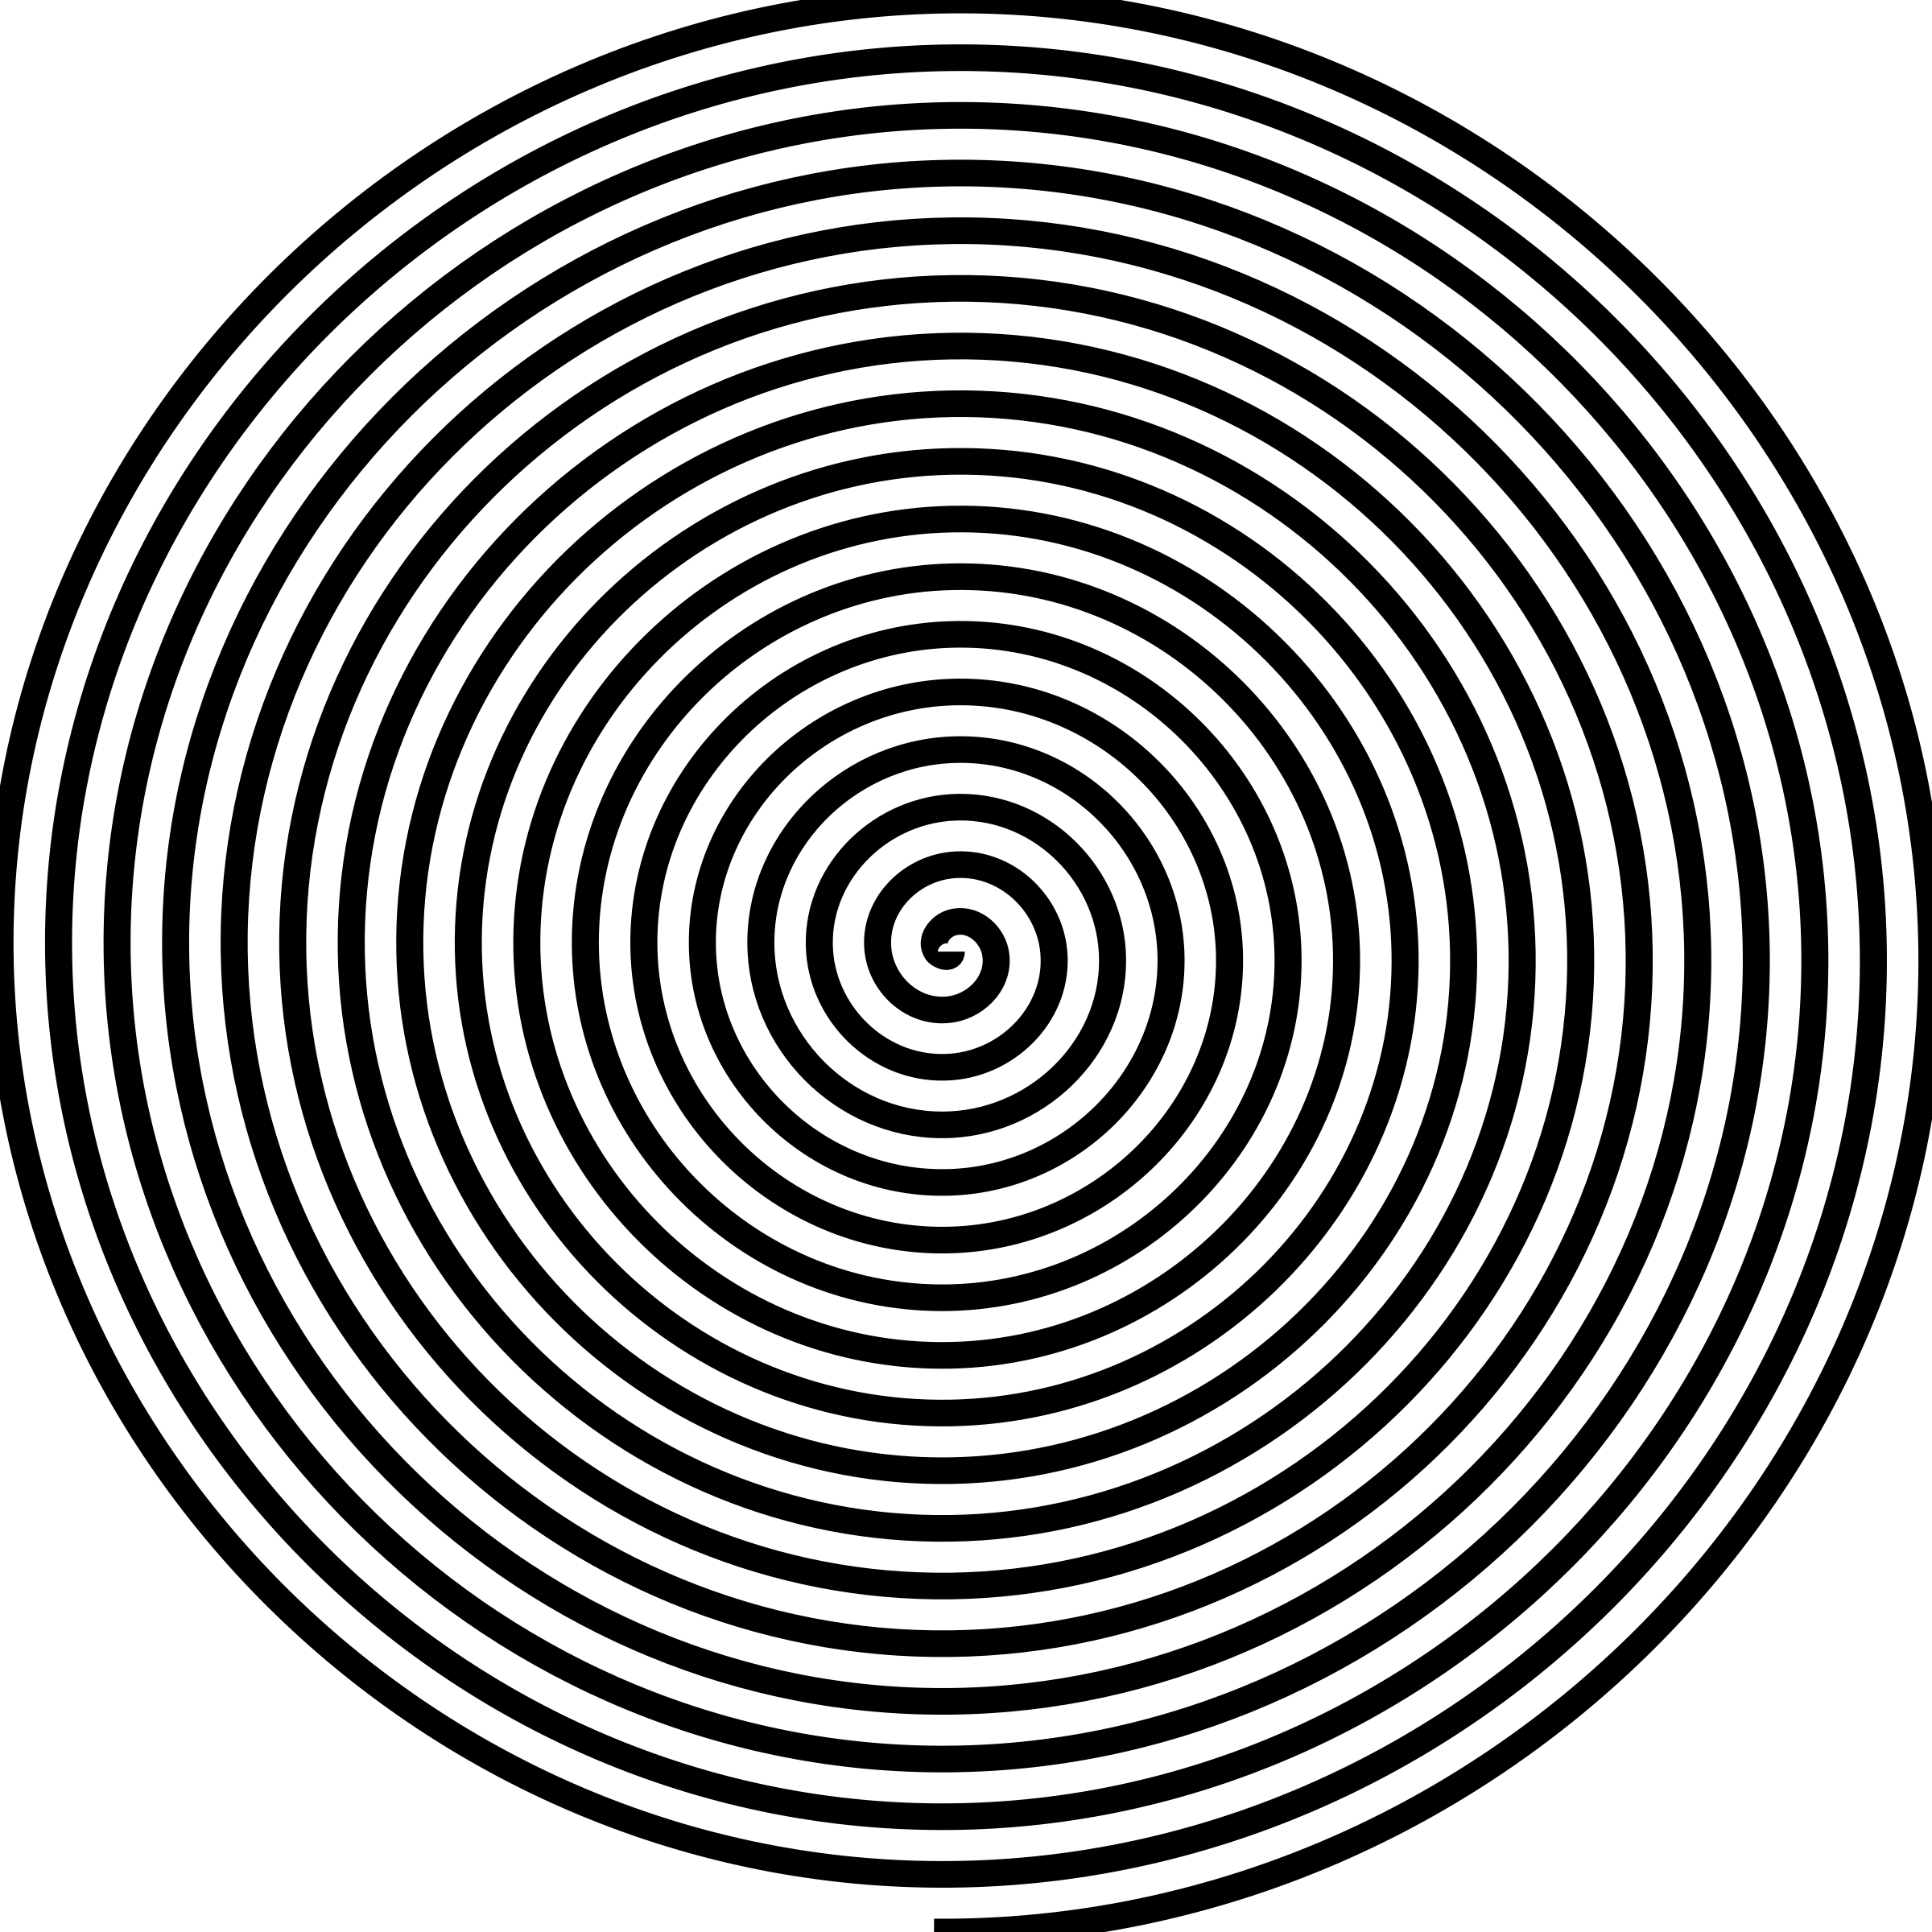 Hypno spirals